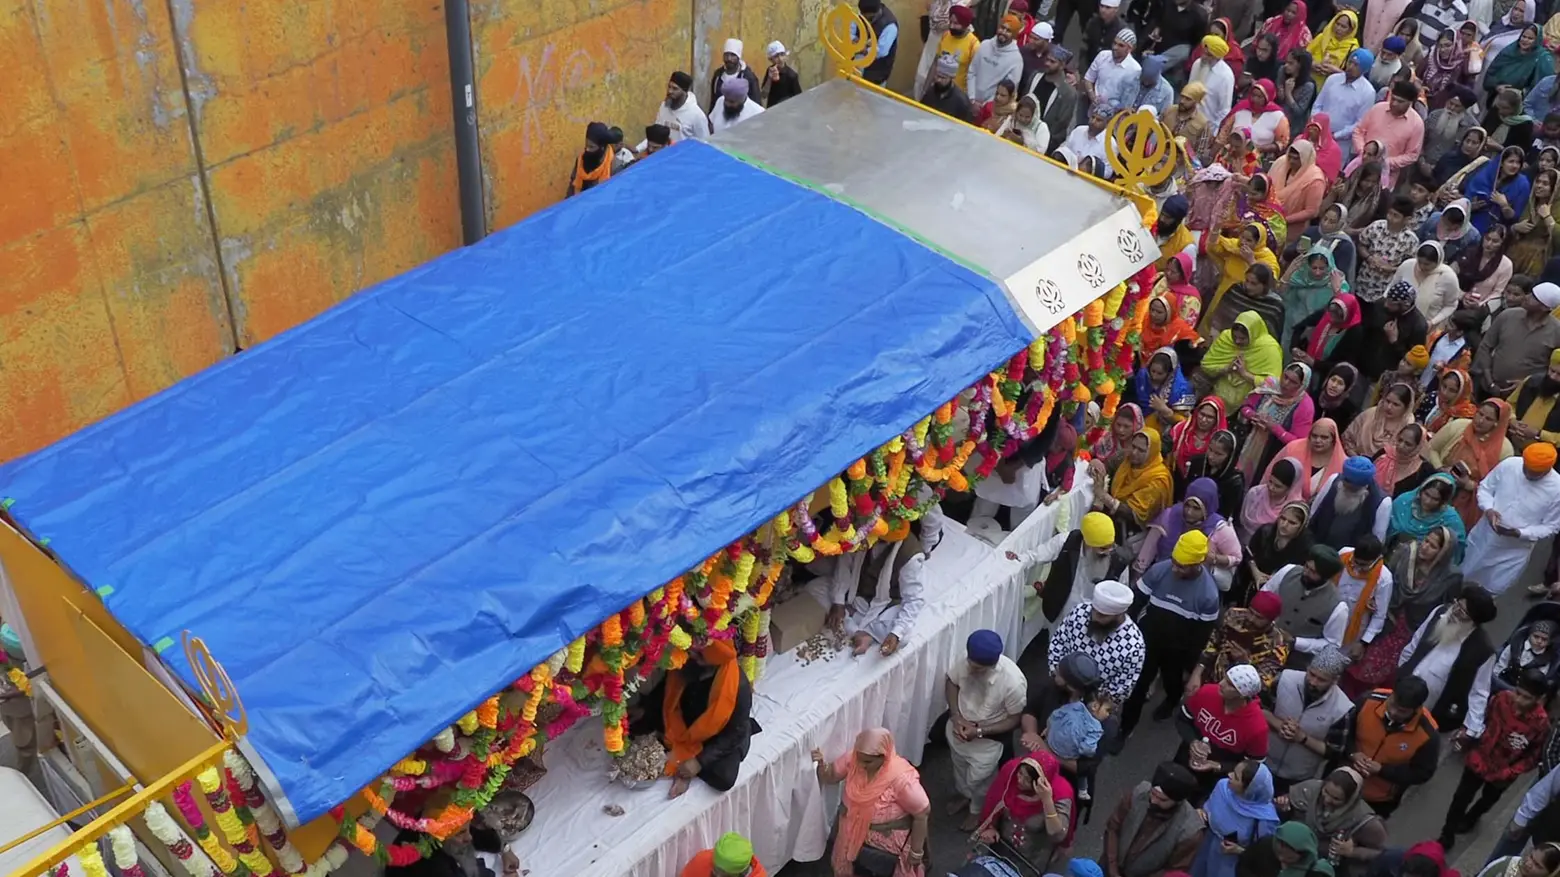 La festa sacra dei sikh  Piedi nudi e capo coperto:  ventimila fedeli in corteo